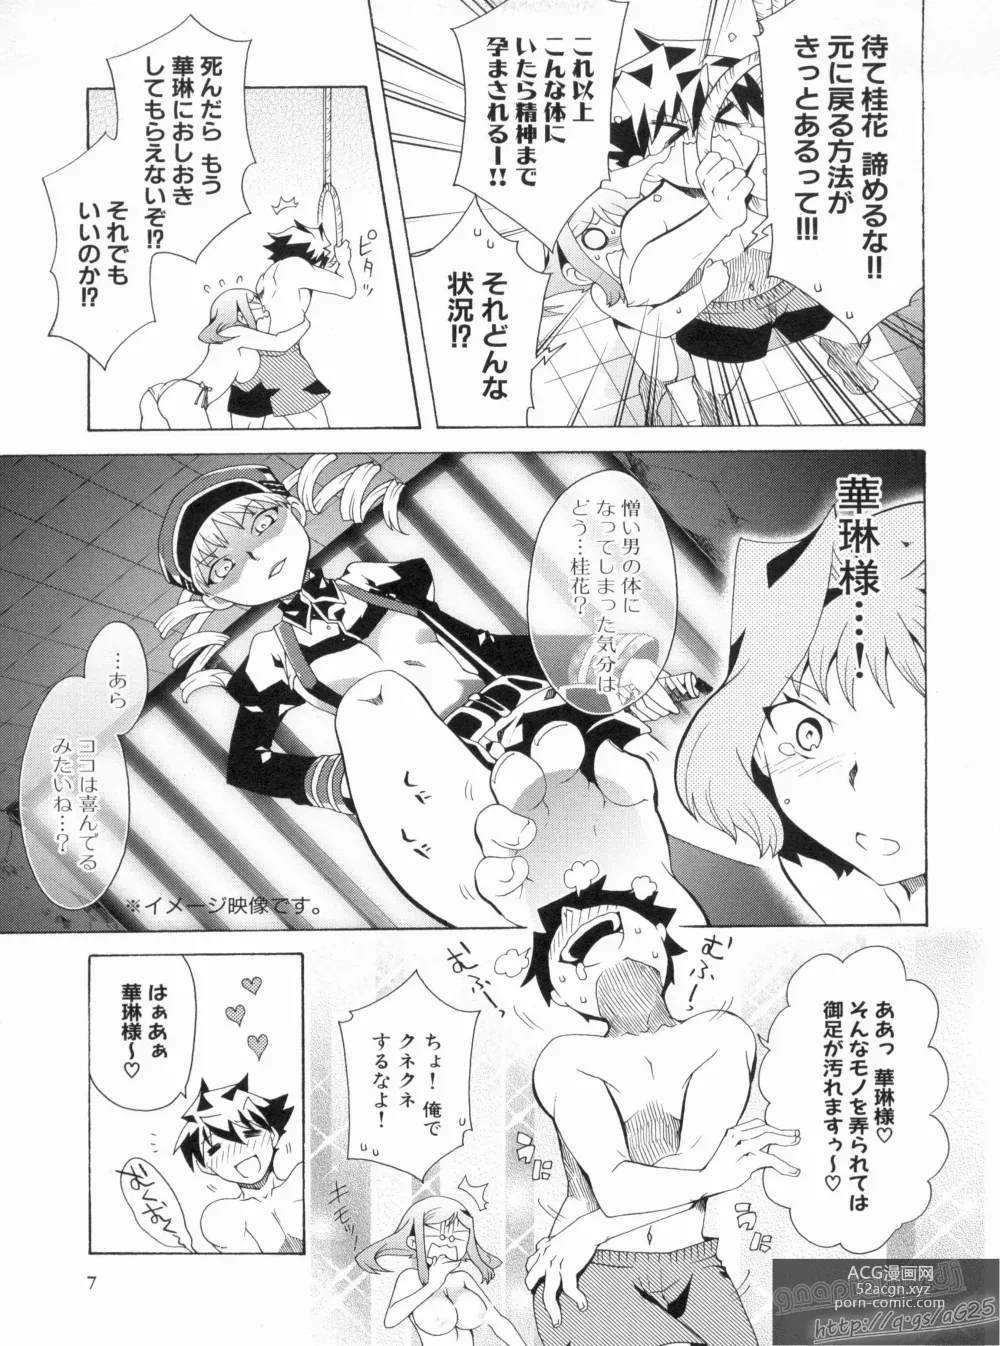 Page 11 of manga Shin Koihime Musou Gaishi Saiten VOL.2